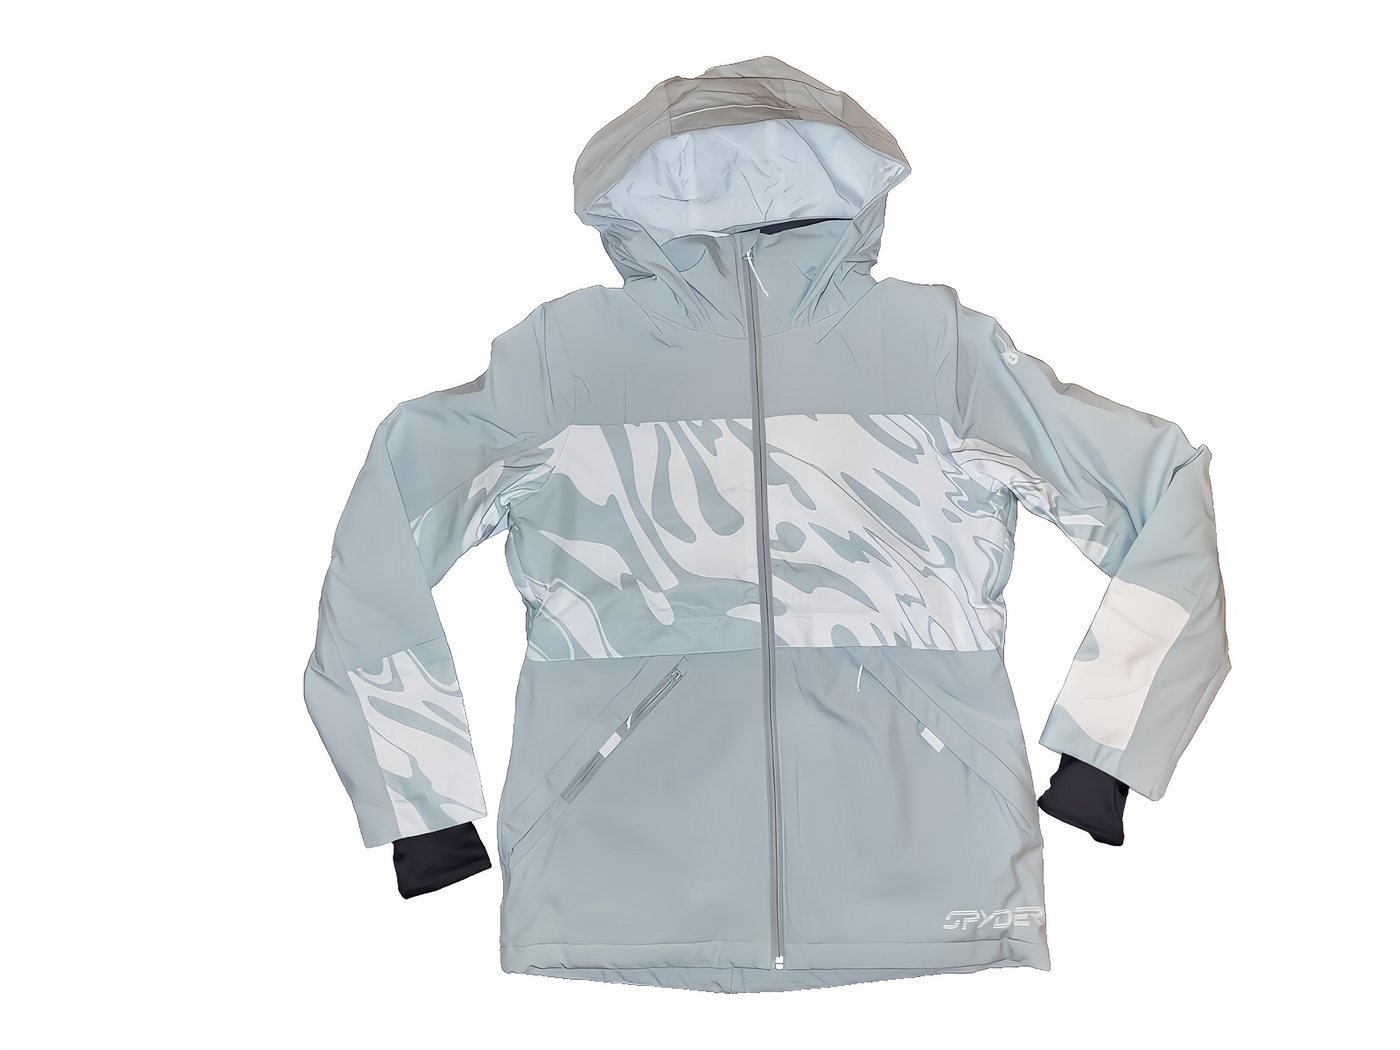 Spyder Skijacke Field Skijacke für Damen - Farbe wintergreen von Spyder